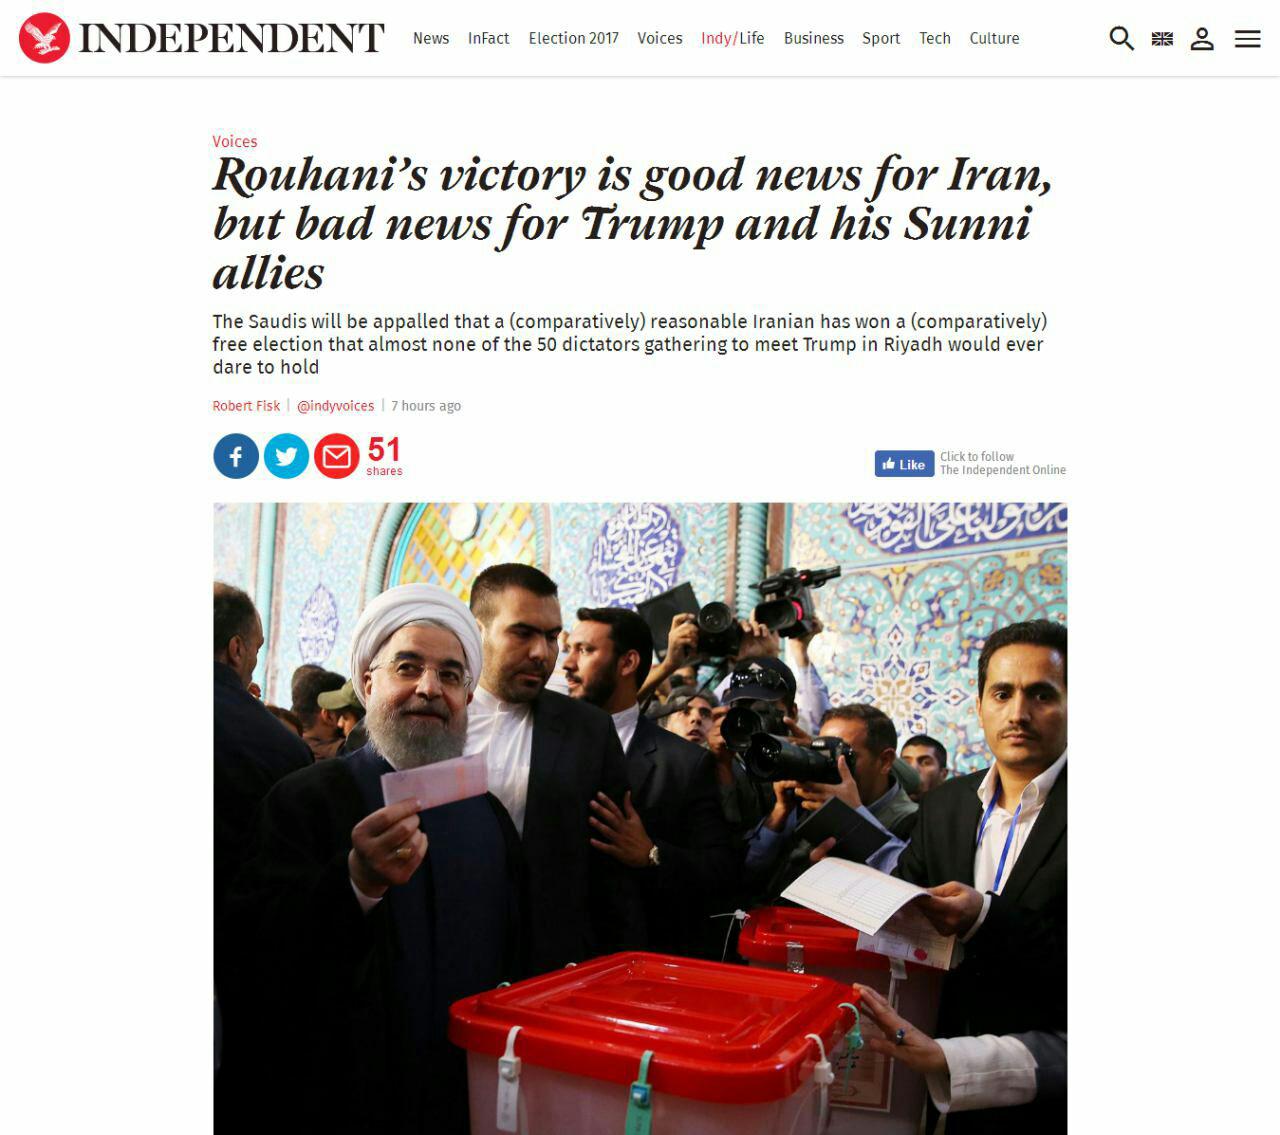 بازتاب حضور پرشور مردم در انتخابات 96 در ایران